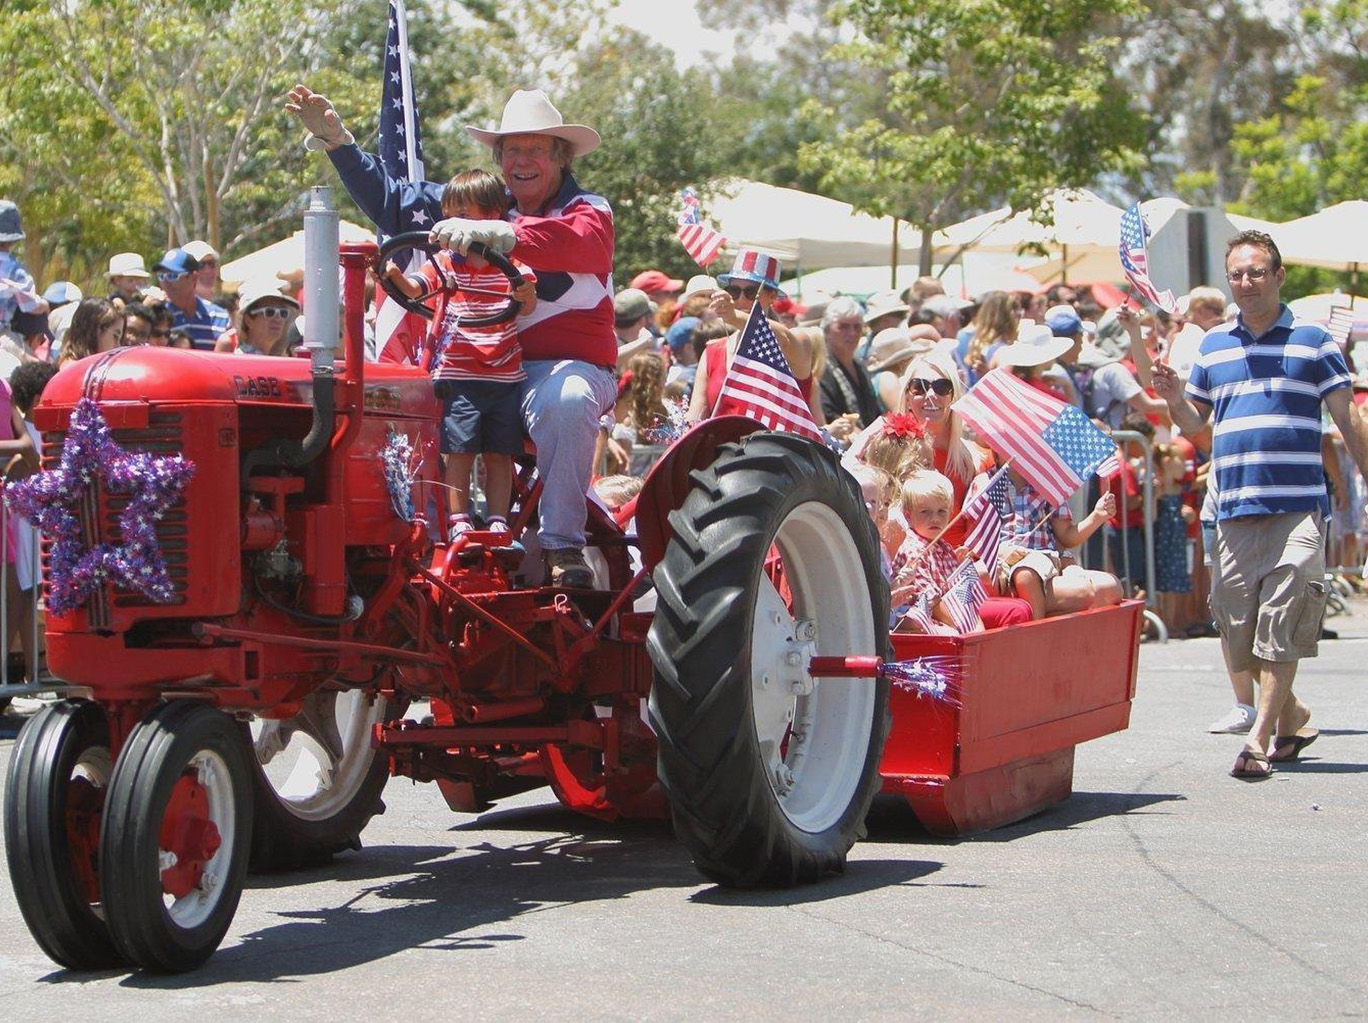 Rancho Santa Fe's Annual 4th of July Parade & Picnic